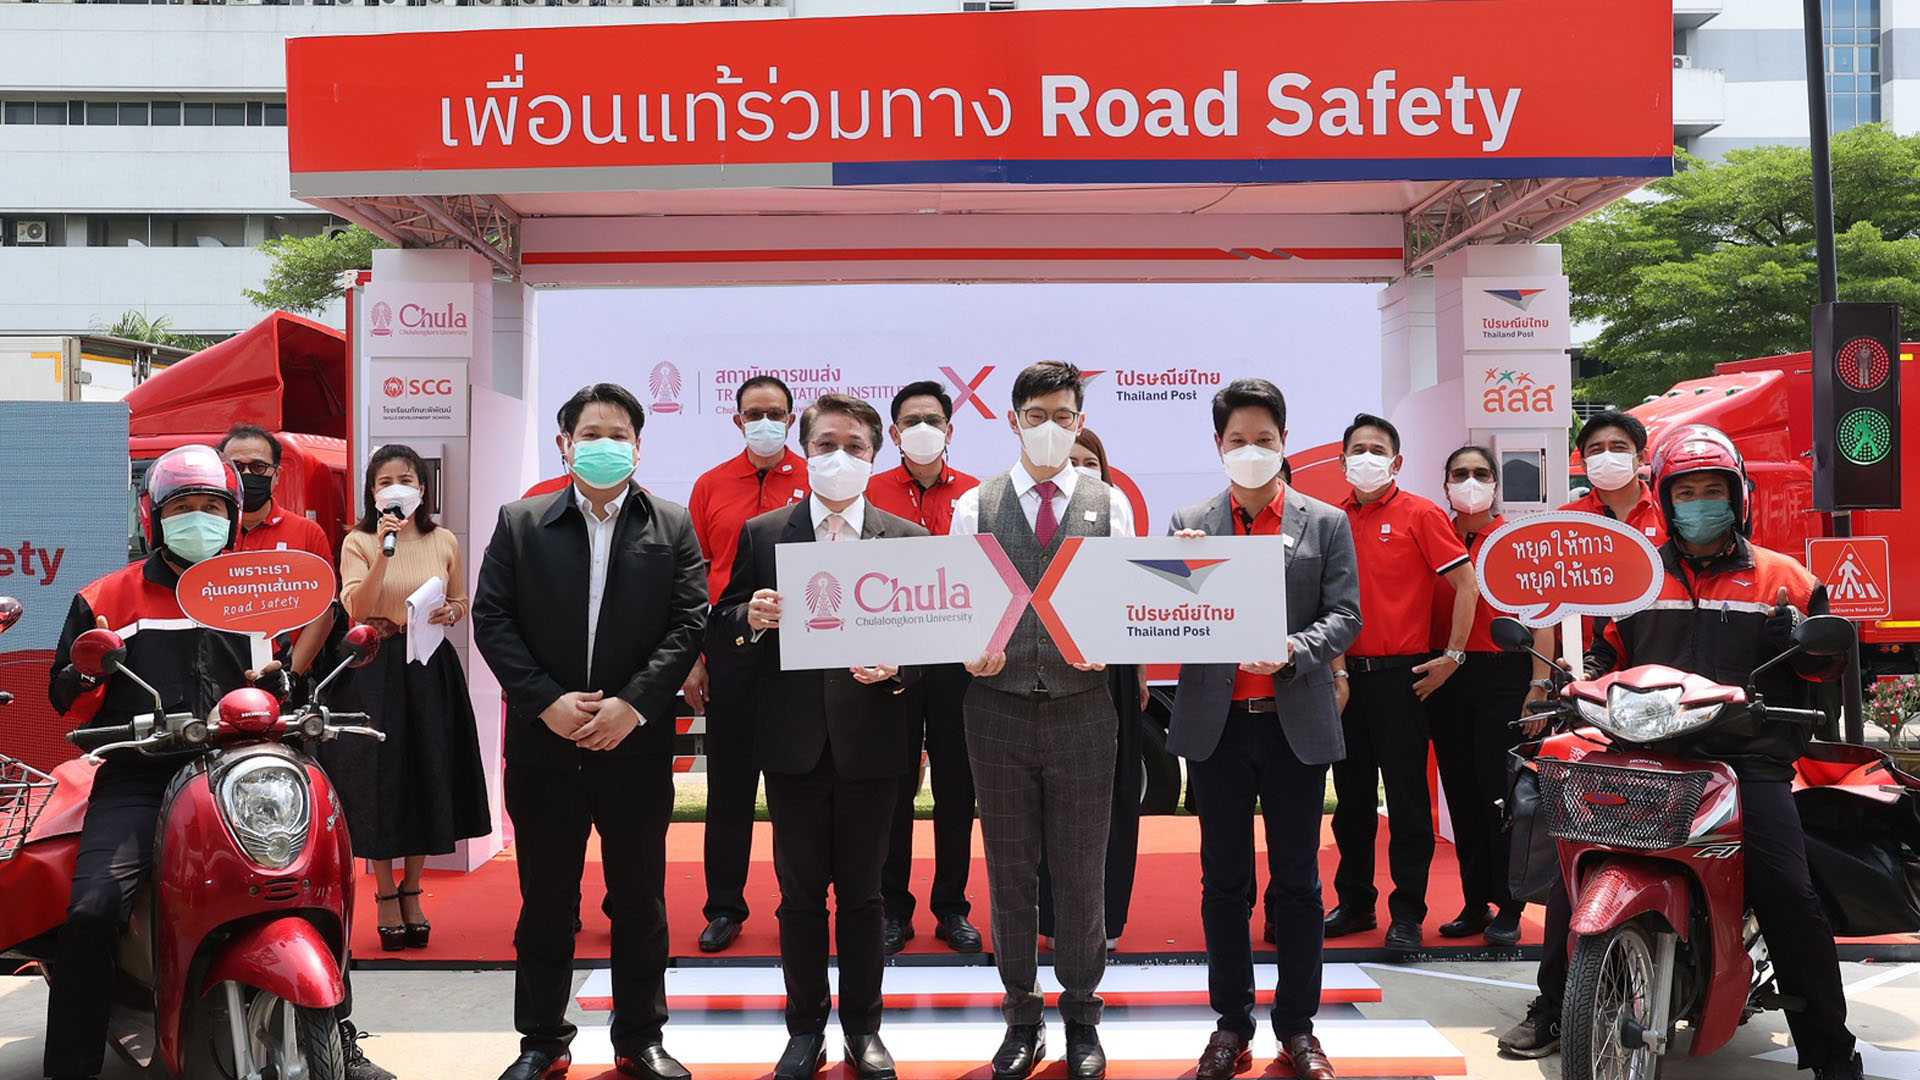 ไปรษณีย์ไทย และ จุฬาฯ เปิดโครงการ “เพื่อนแท้ร่วมทาง Road Safety” ดันบุรุษไปรษณีย์ 20,000 คน นำจ่ายปลอดภัยทุกเส้นทาง